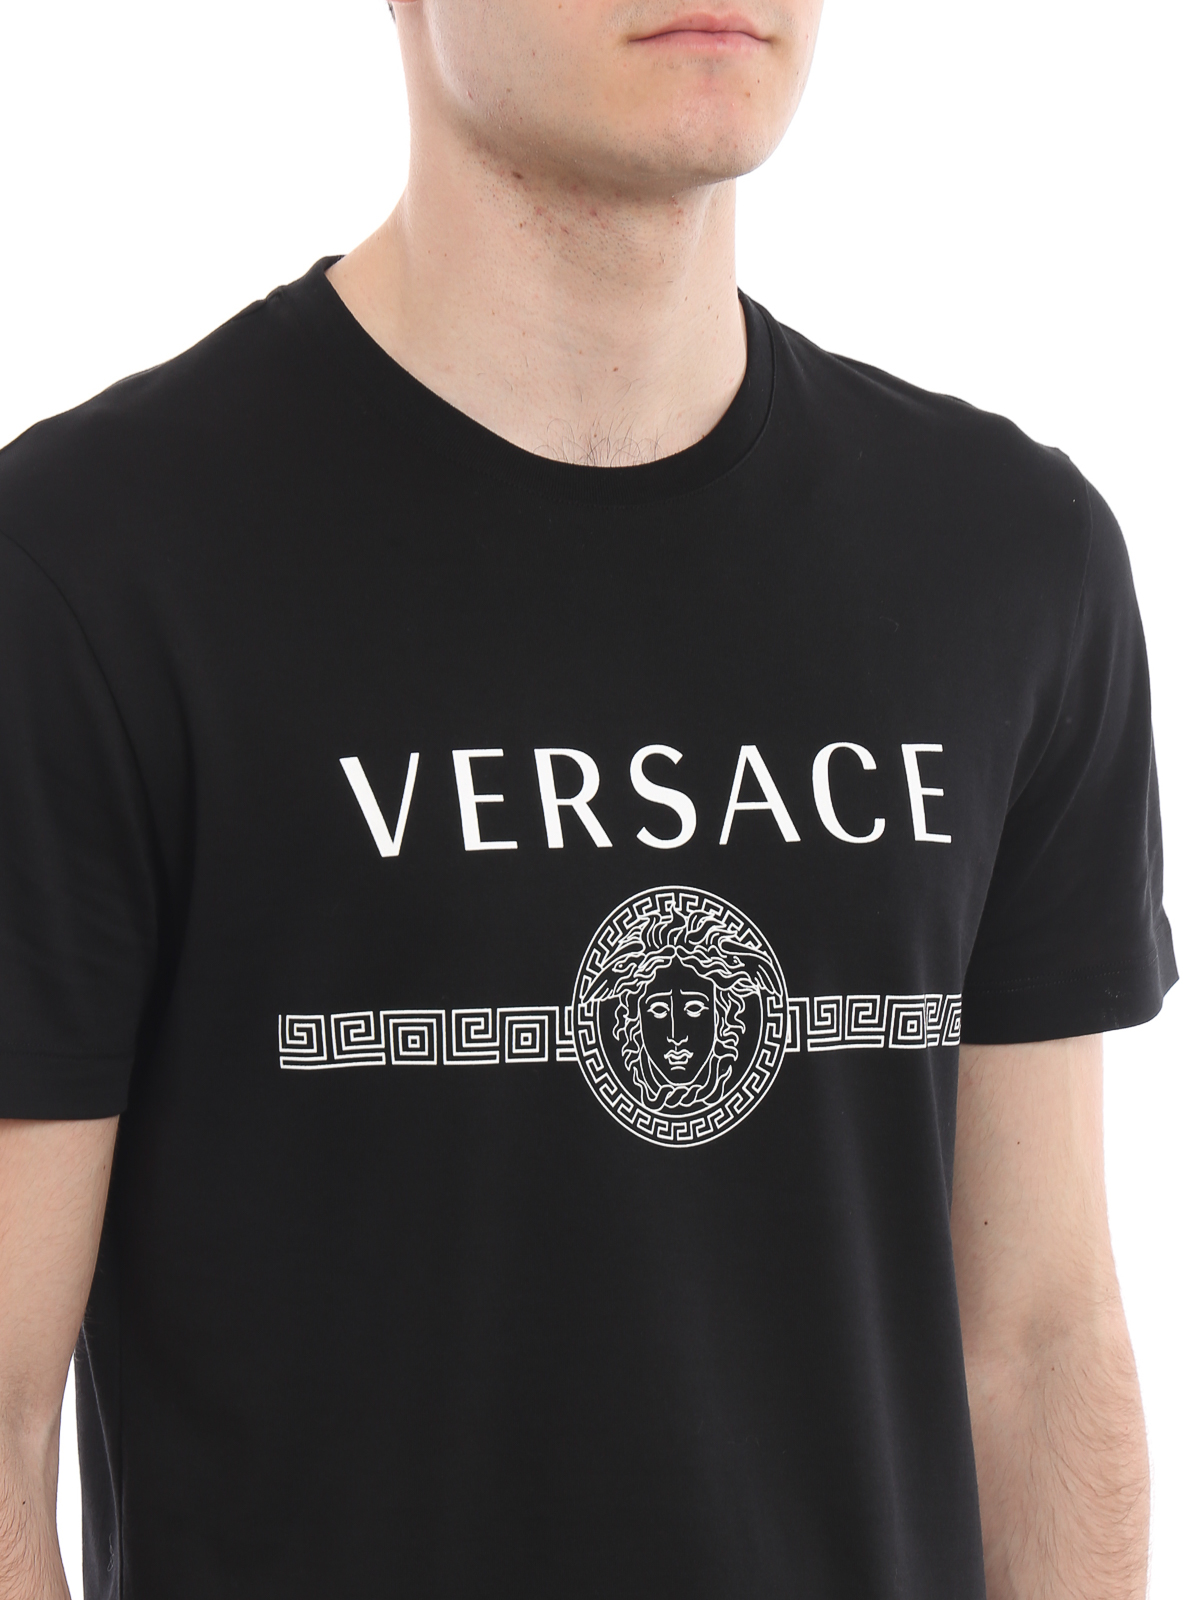 versace t shirt cost